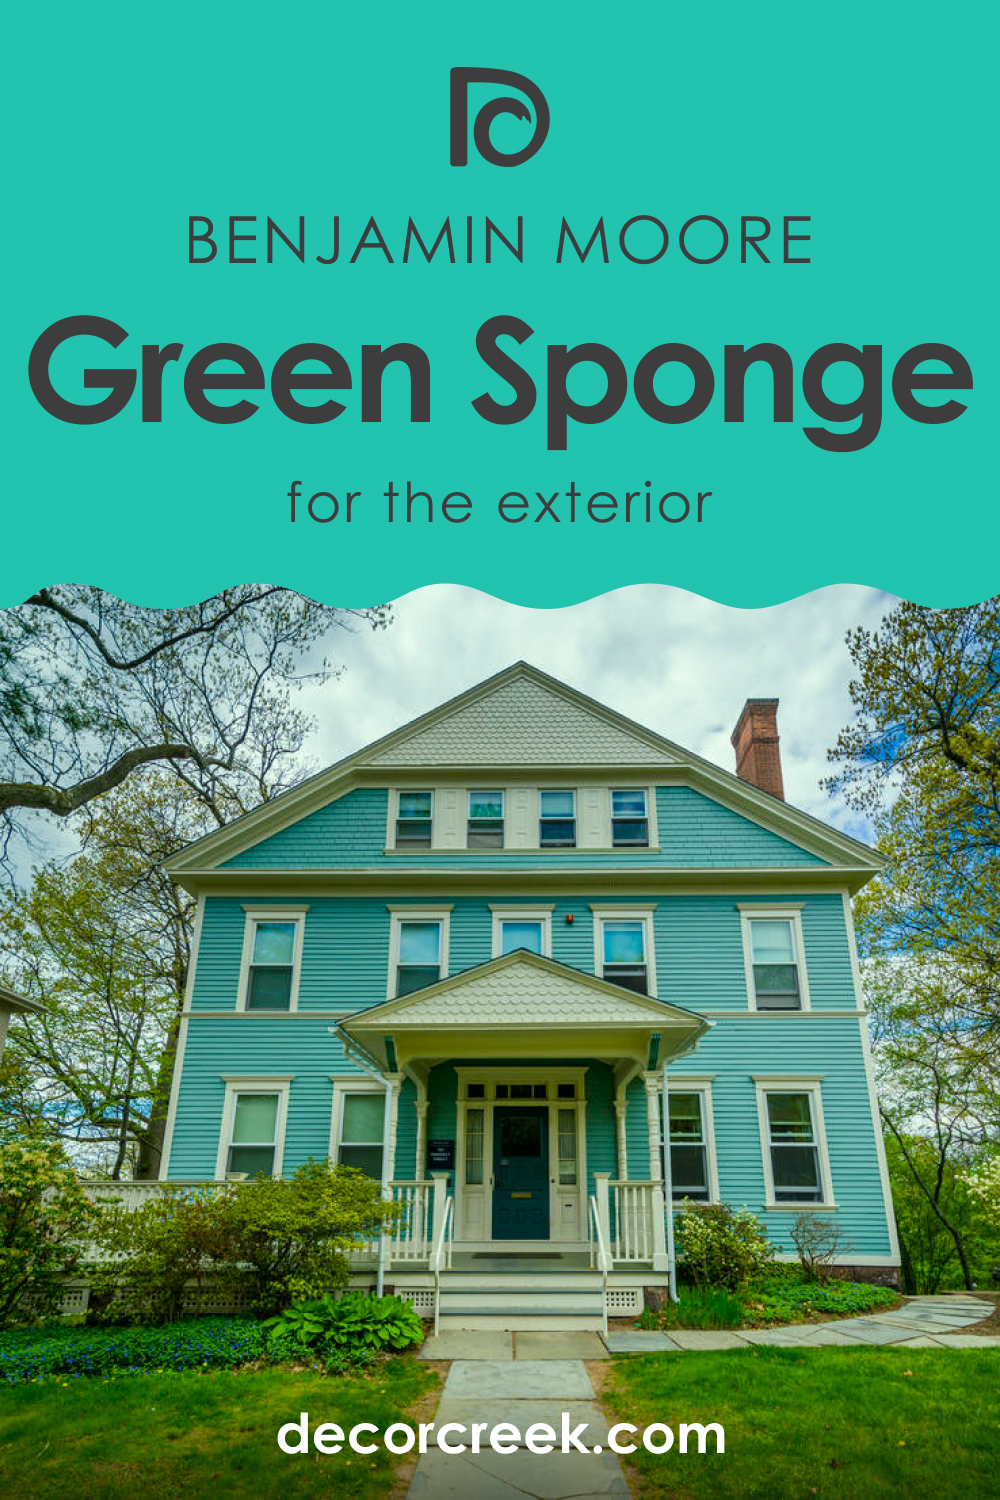 Green Sponge 2046-40 for an Exterior